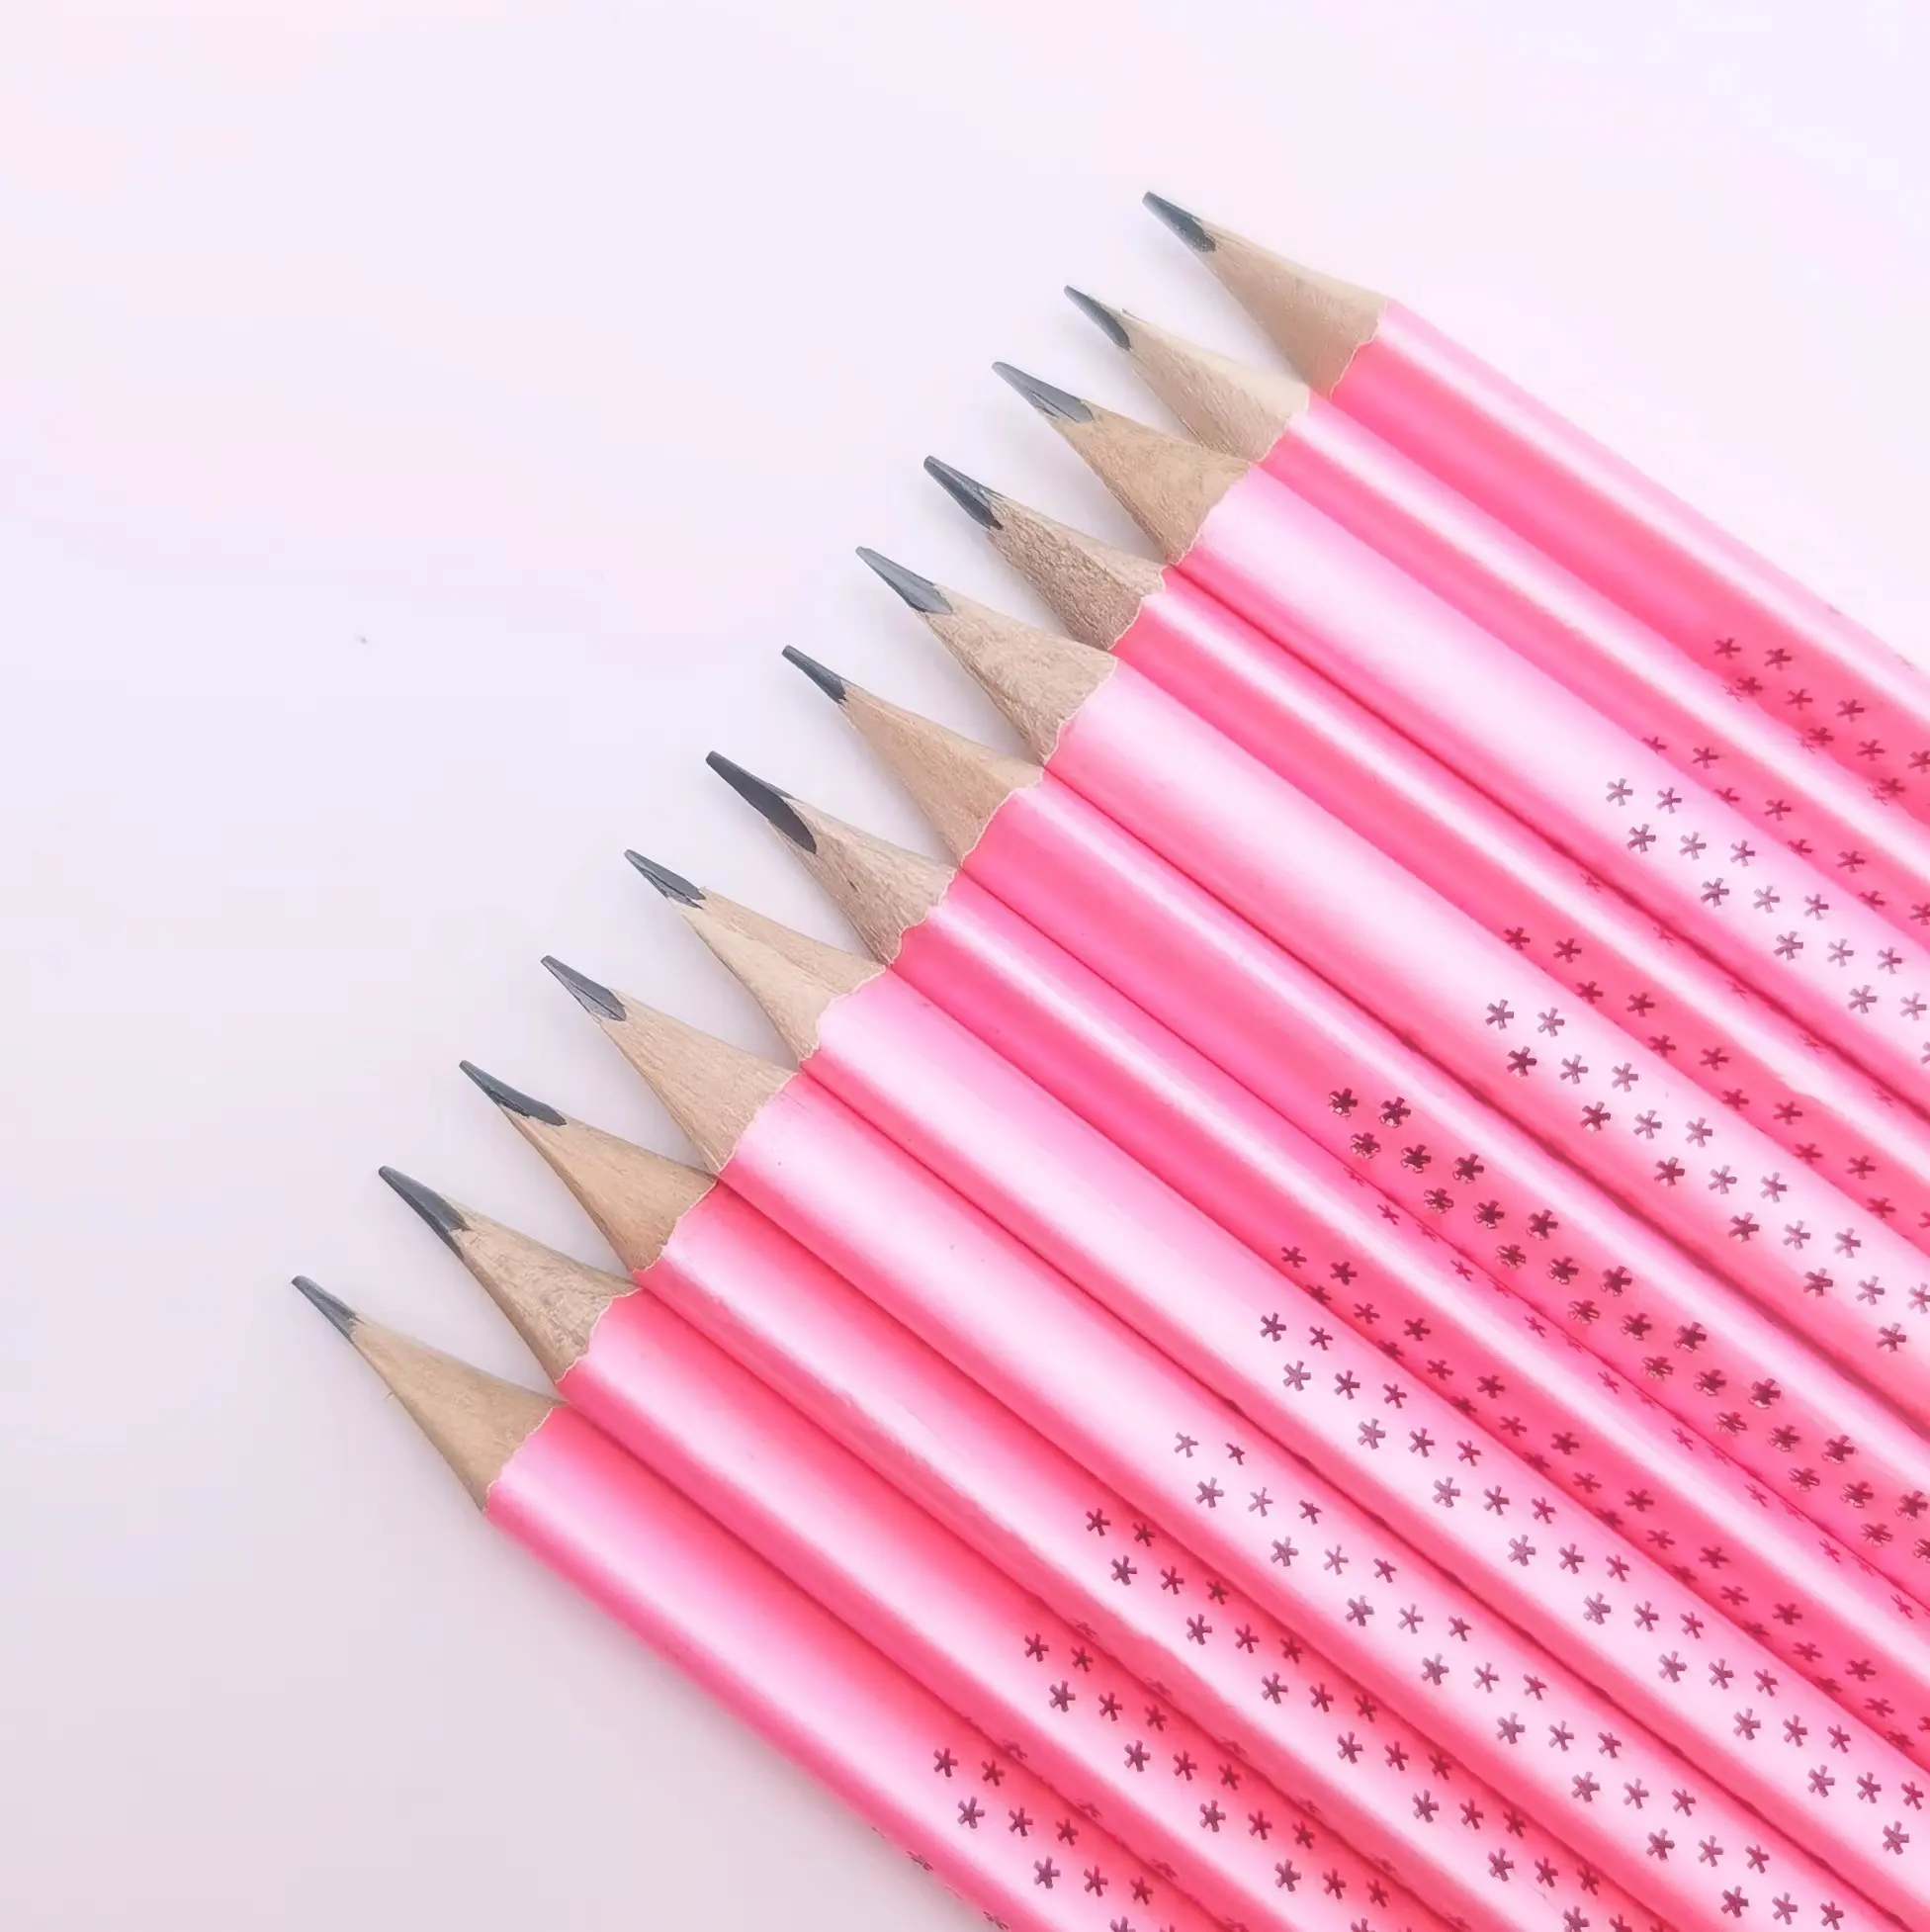 Tam giác Macaron màu hồng biểu tượng tùy chỉnh bằng gỗ HB 2B bút chì Bán Chạy nhất cho học sinh trung học và văn phòng quà tặng với tẩy